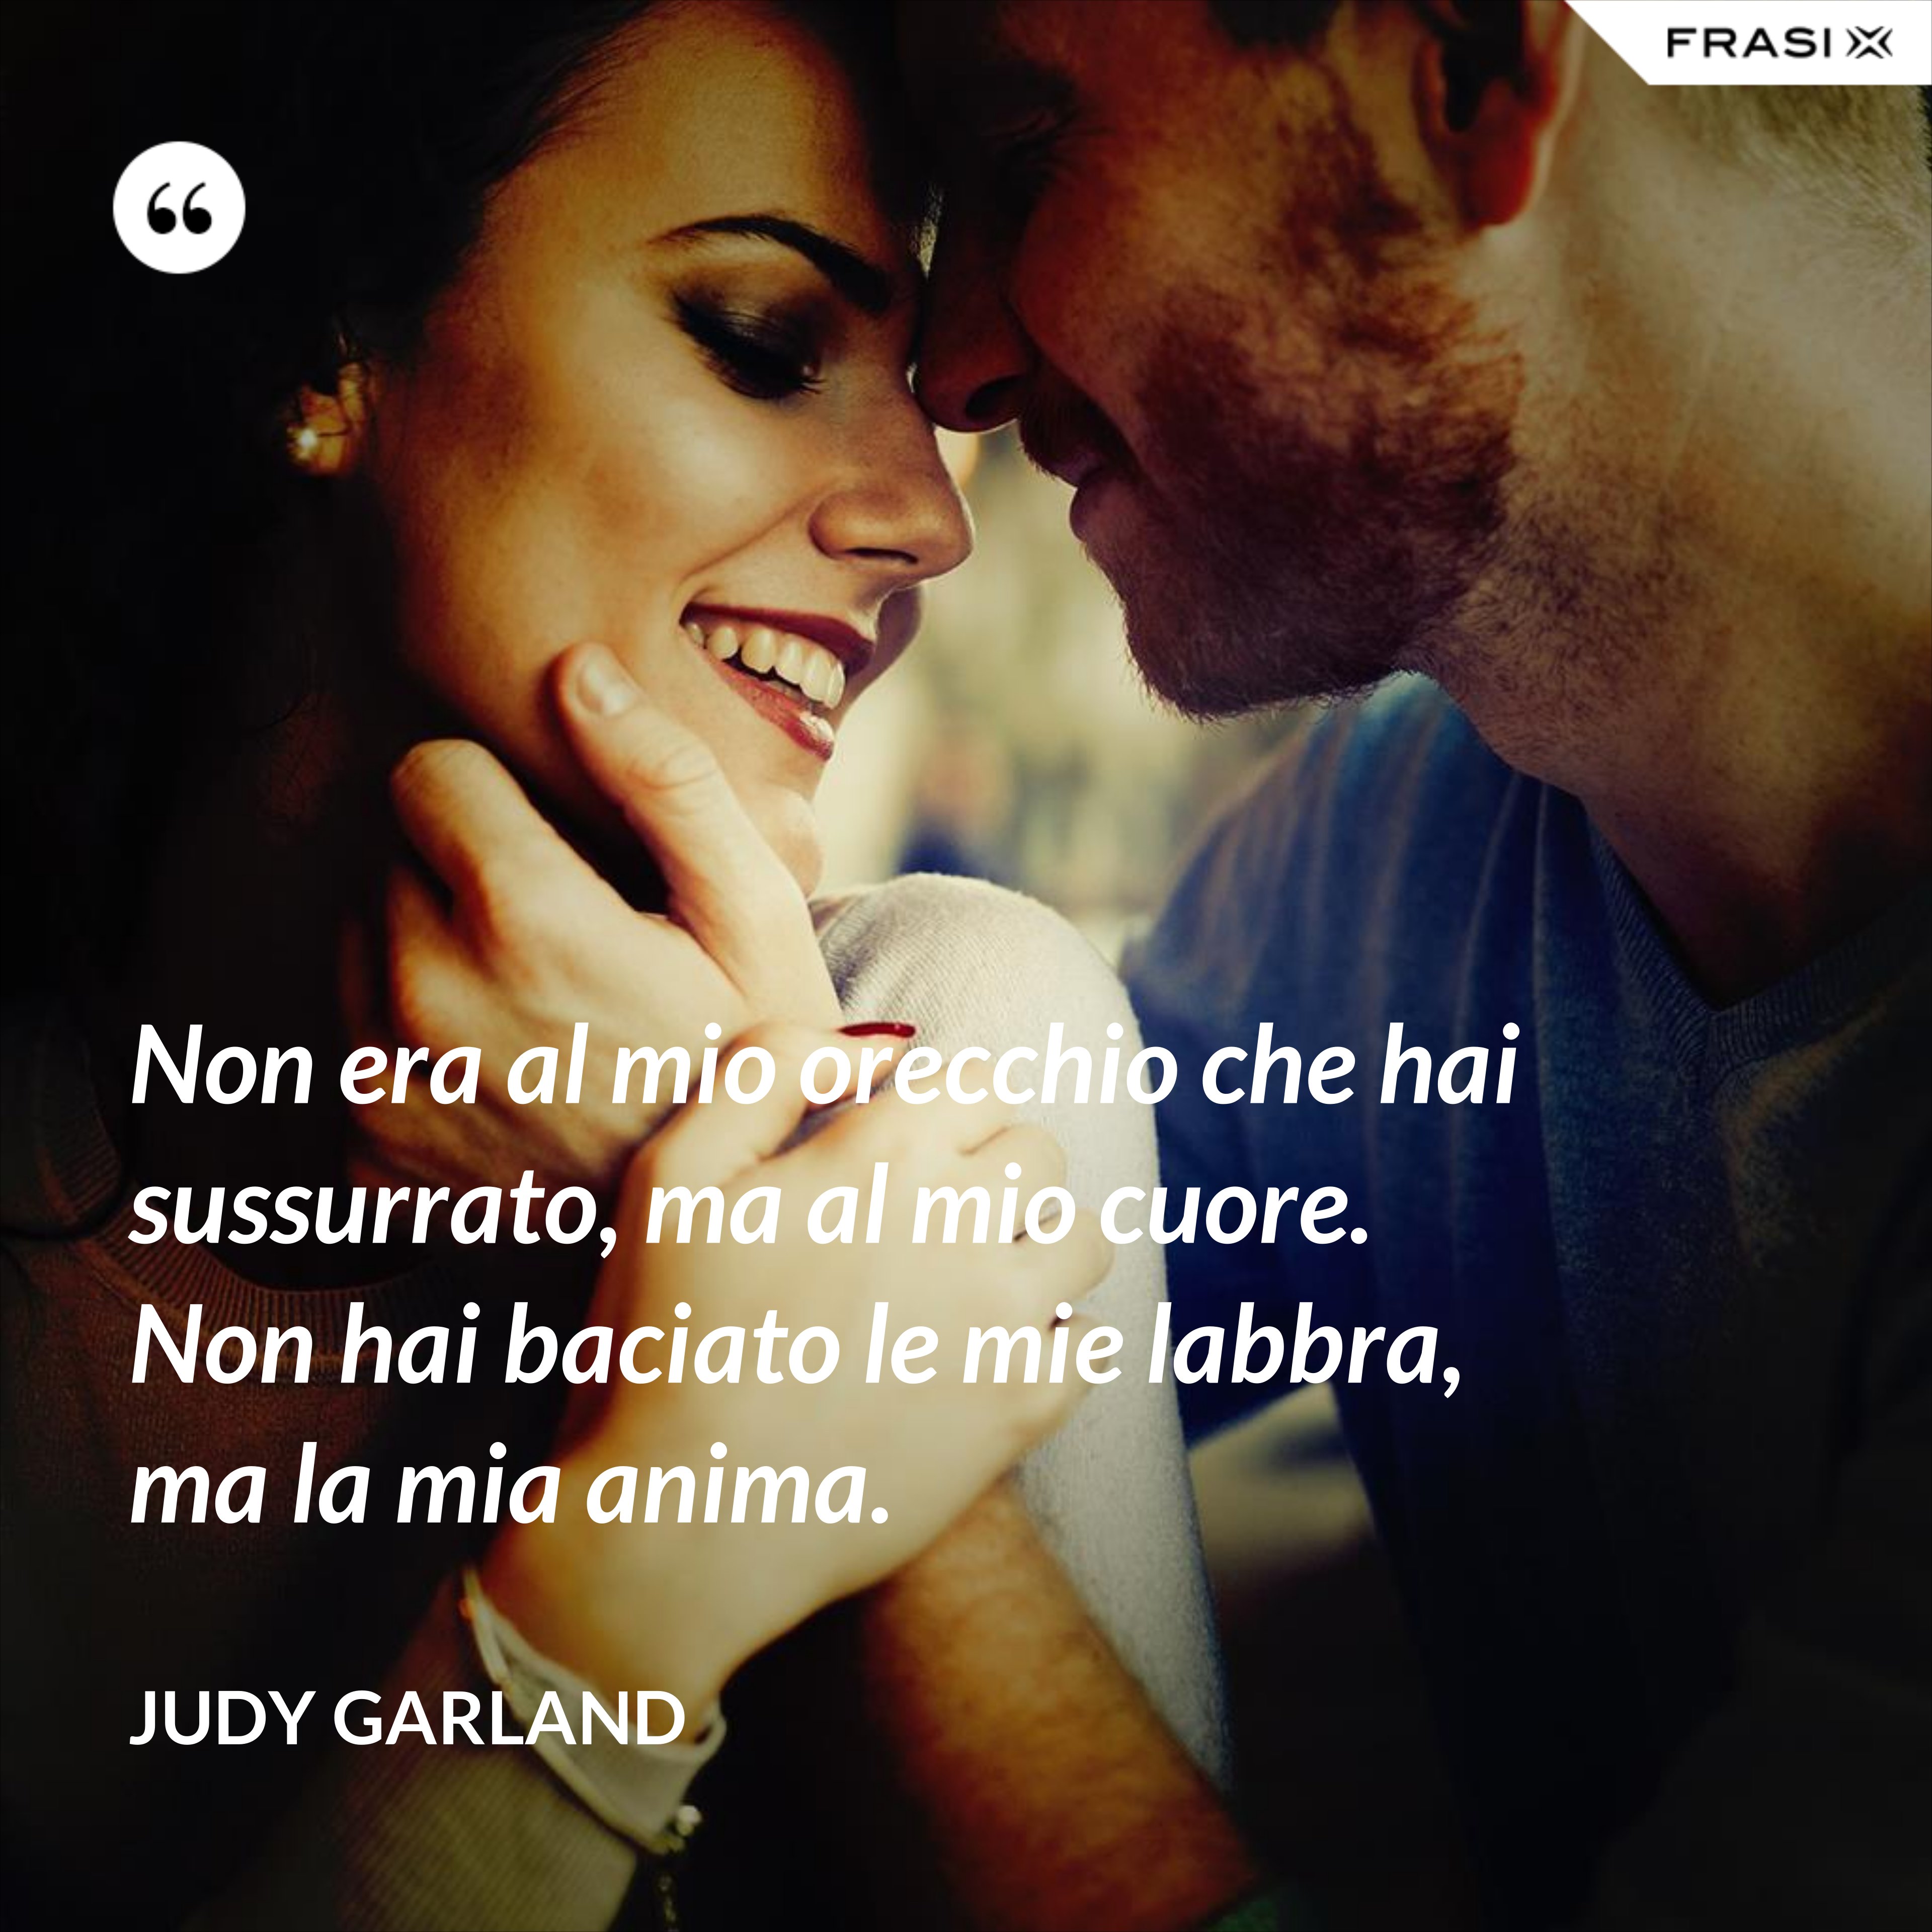 Non era al mio orecchio che hai sussurrato, ma al mio cuore. Non hai baciato le mie labbra, ma la mia anima. - Judy Garland